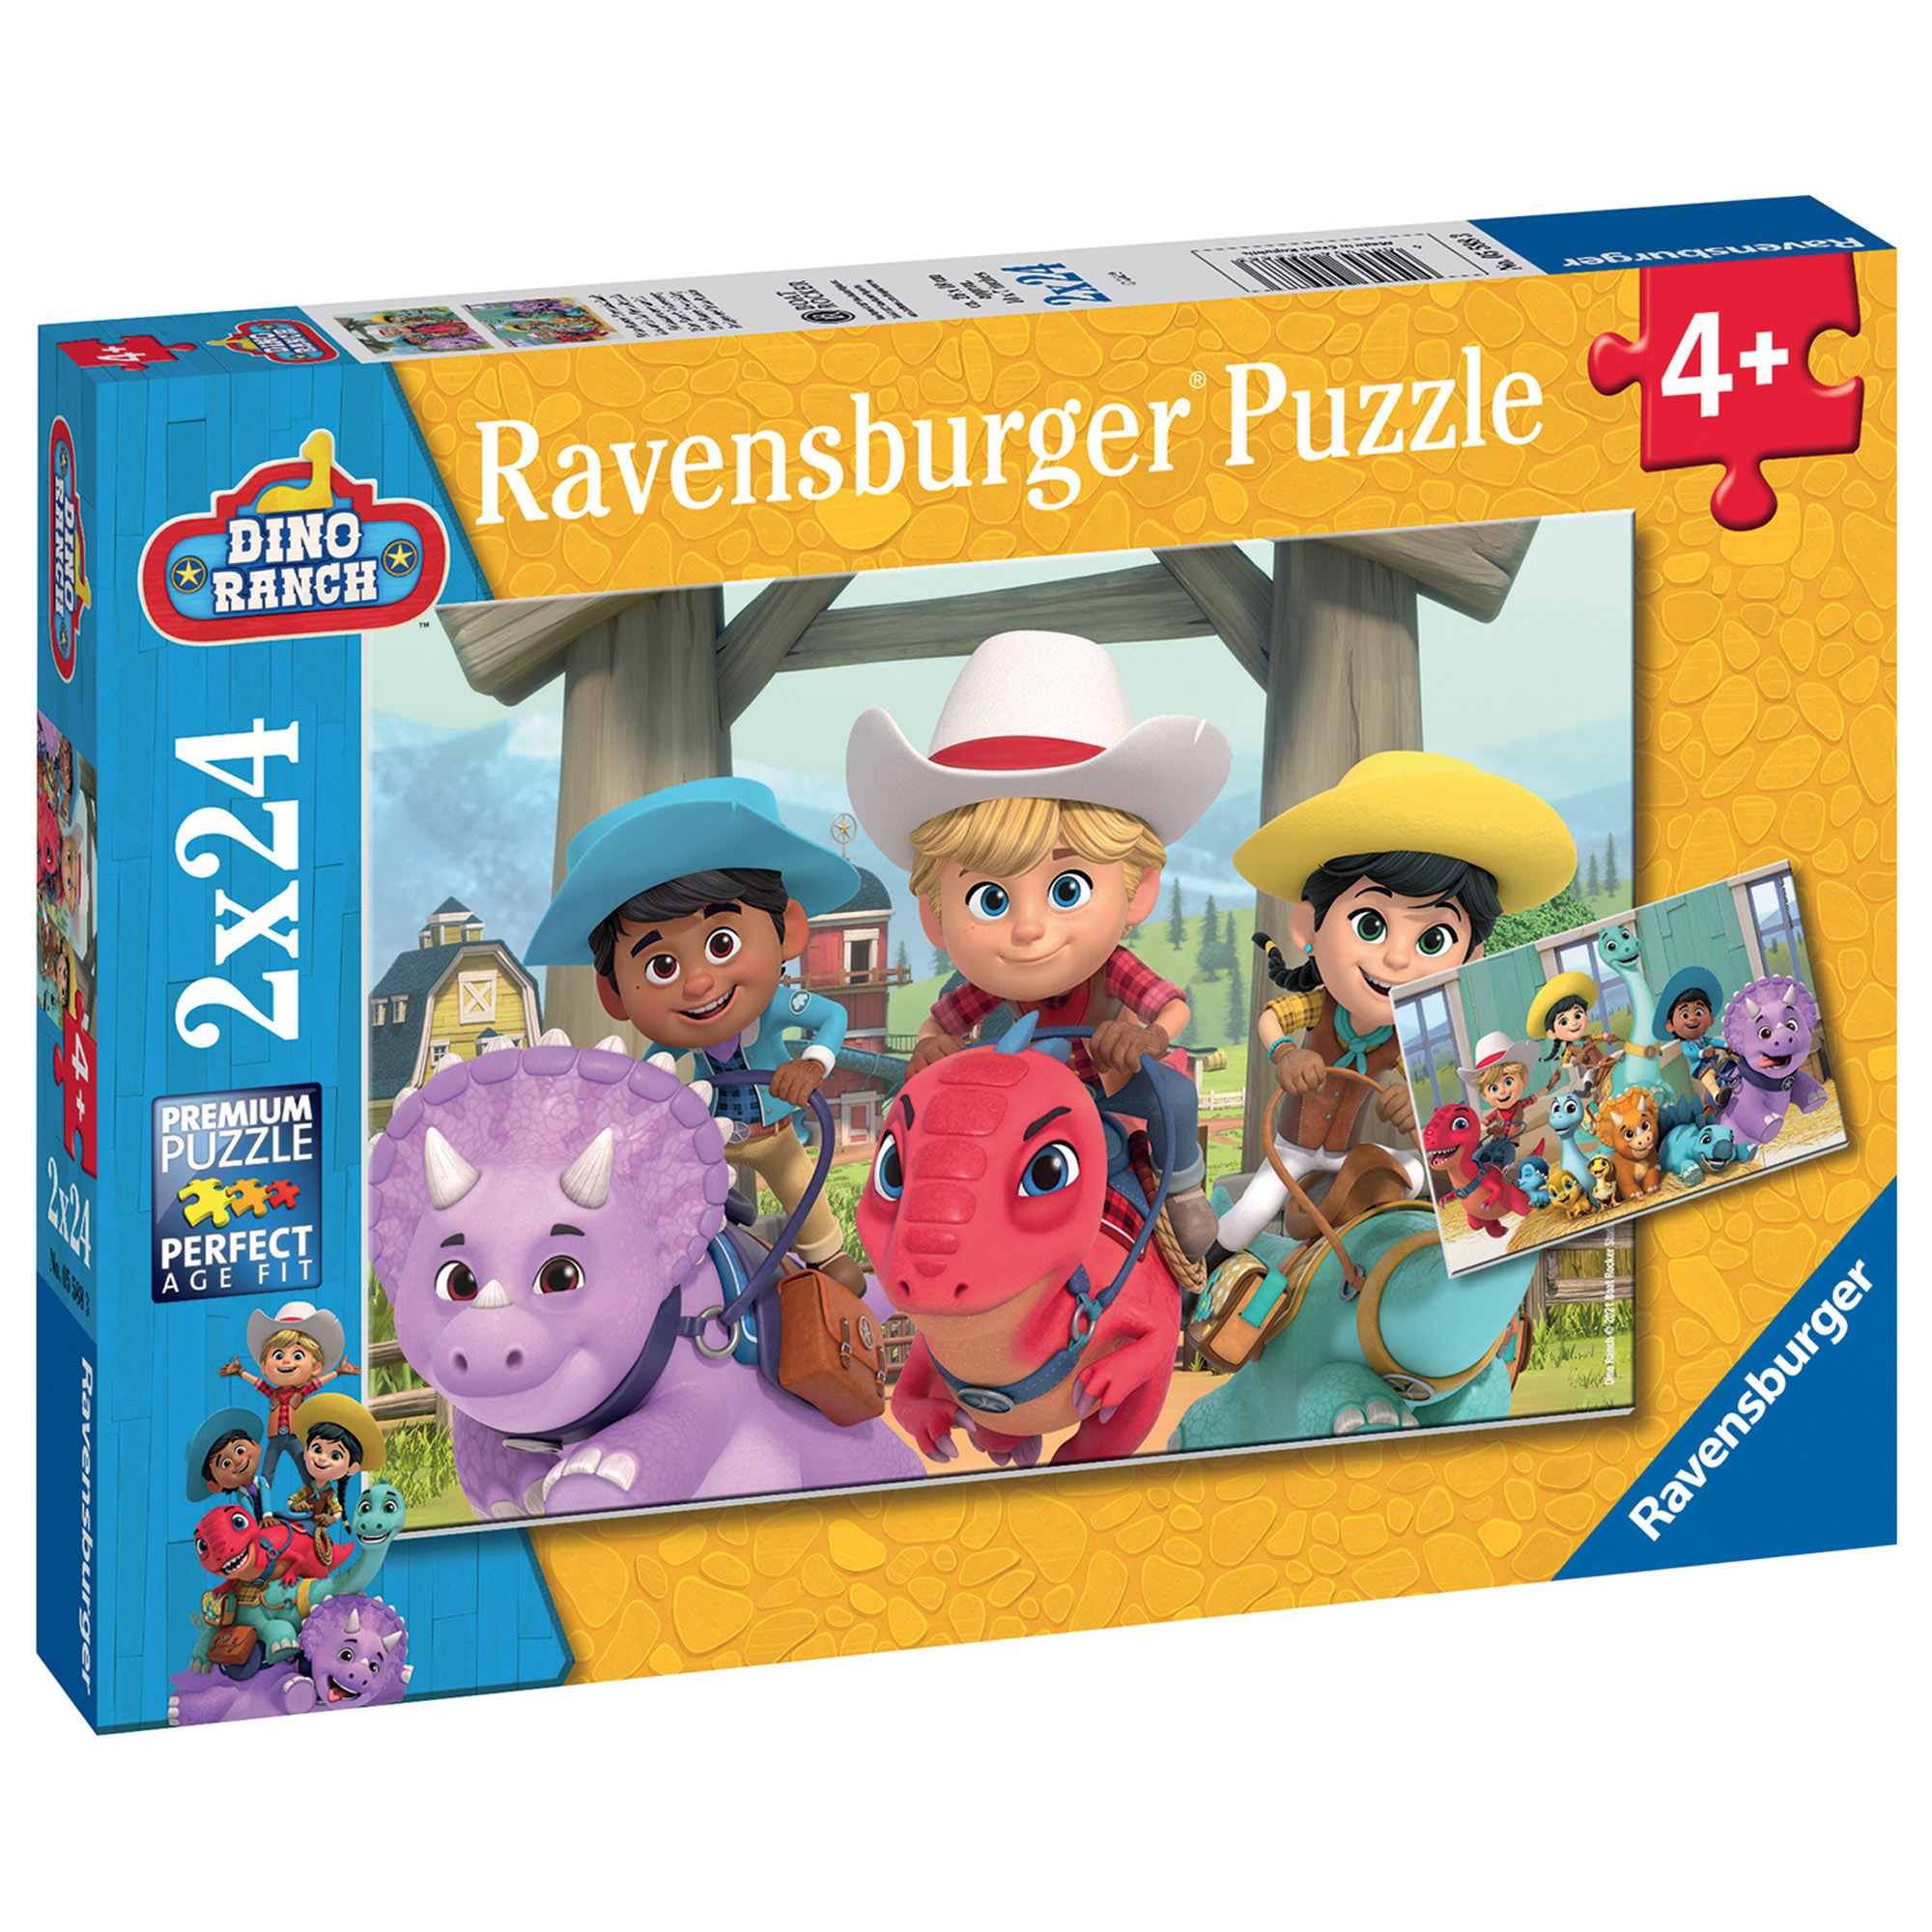 Ravensburger - puzzle dino ranch, collezione 2x24, 2 puzzle da 24 pezzi, età raccomandata 4+ anni - RAVENSBURGER